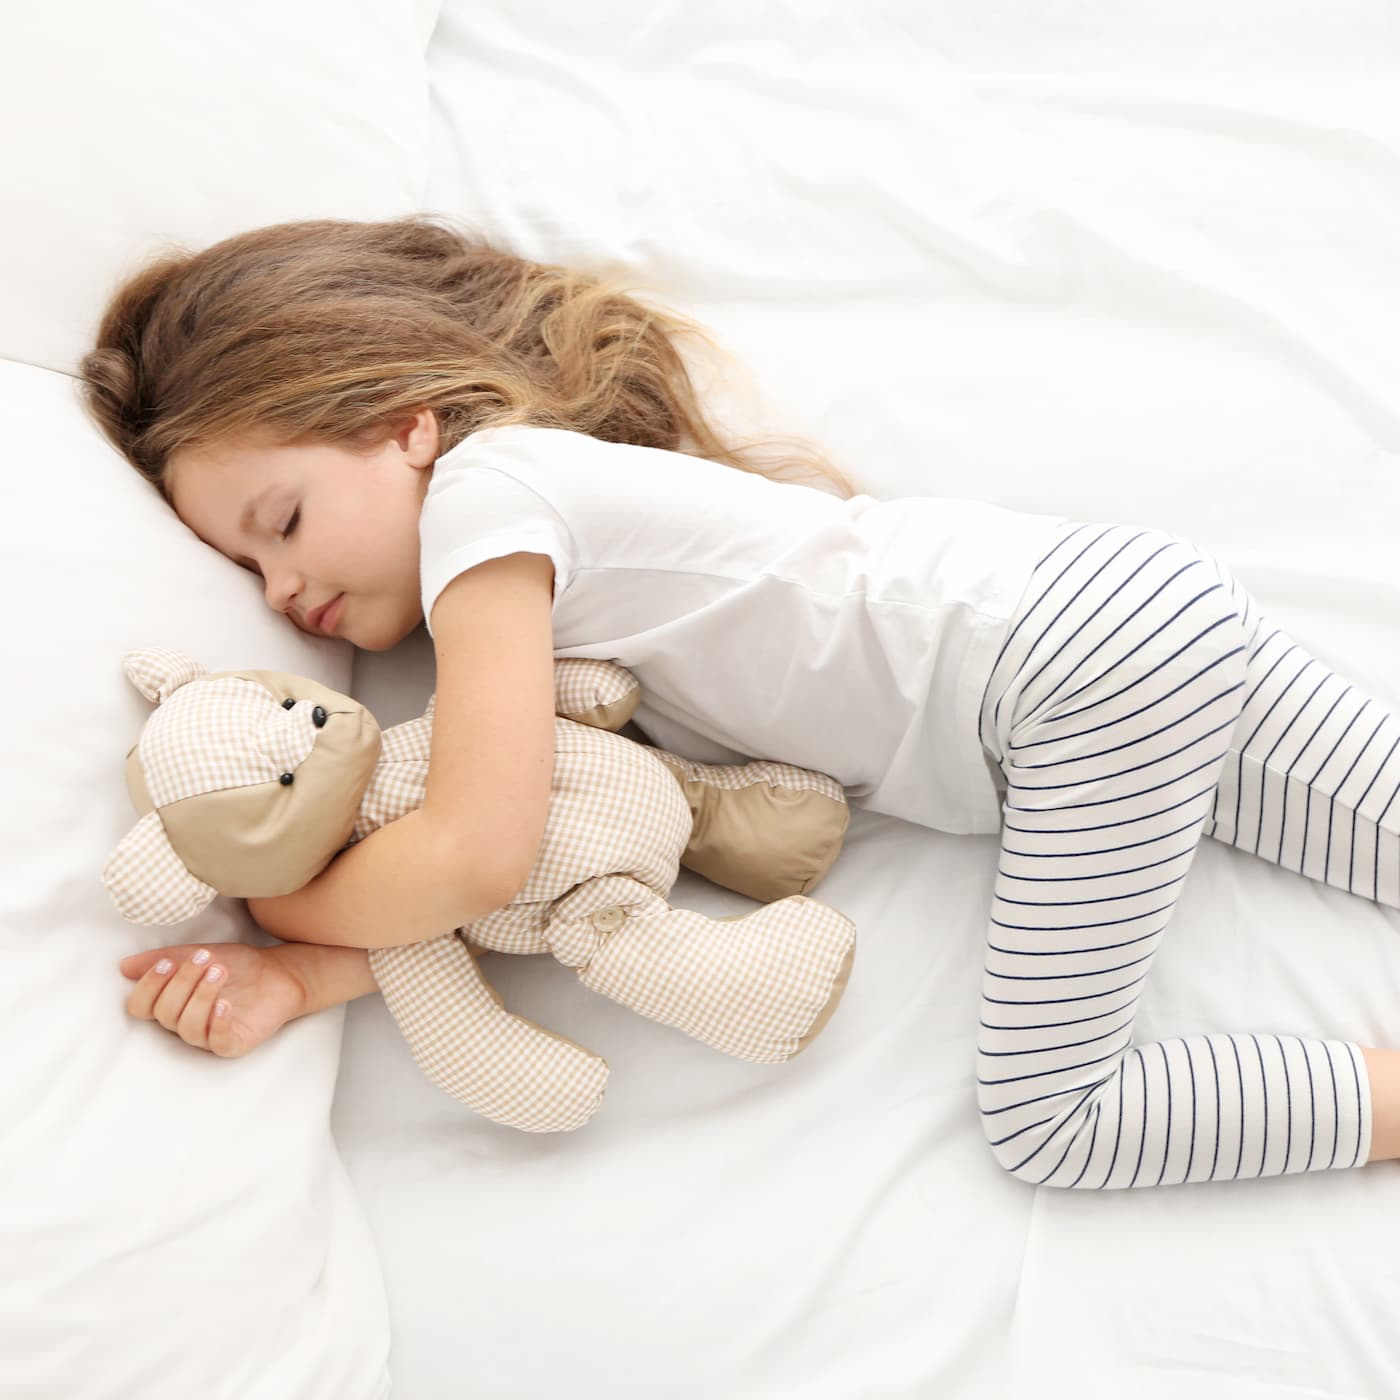 Children's sleep 